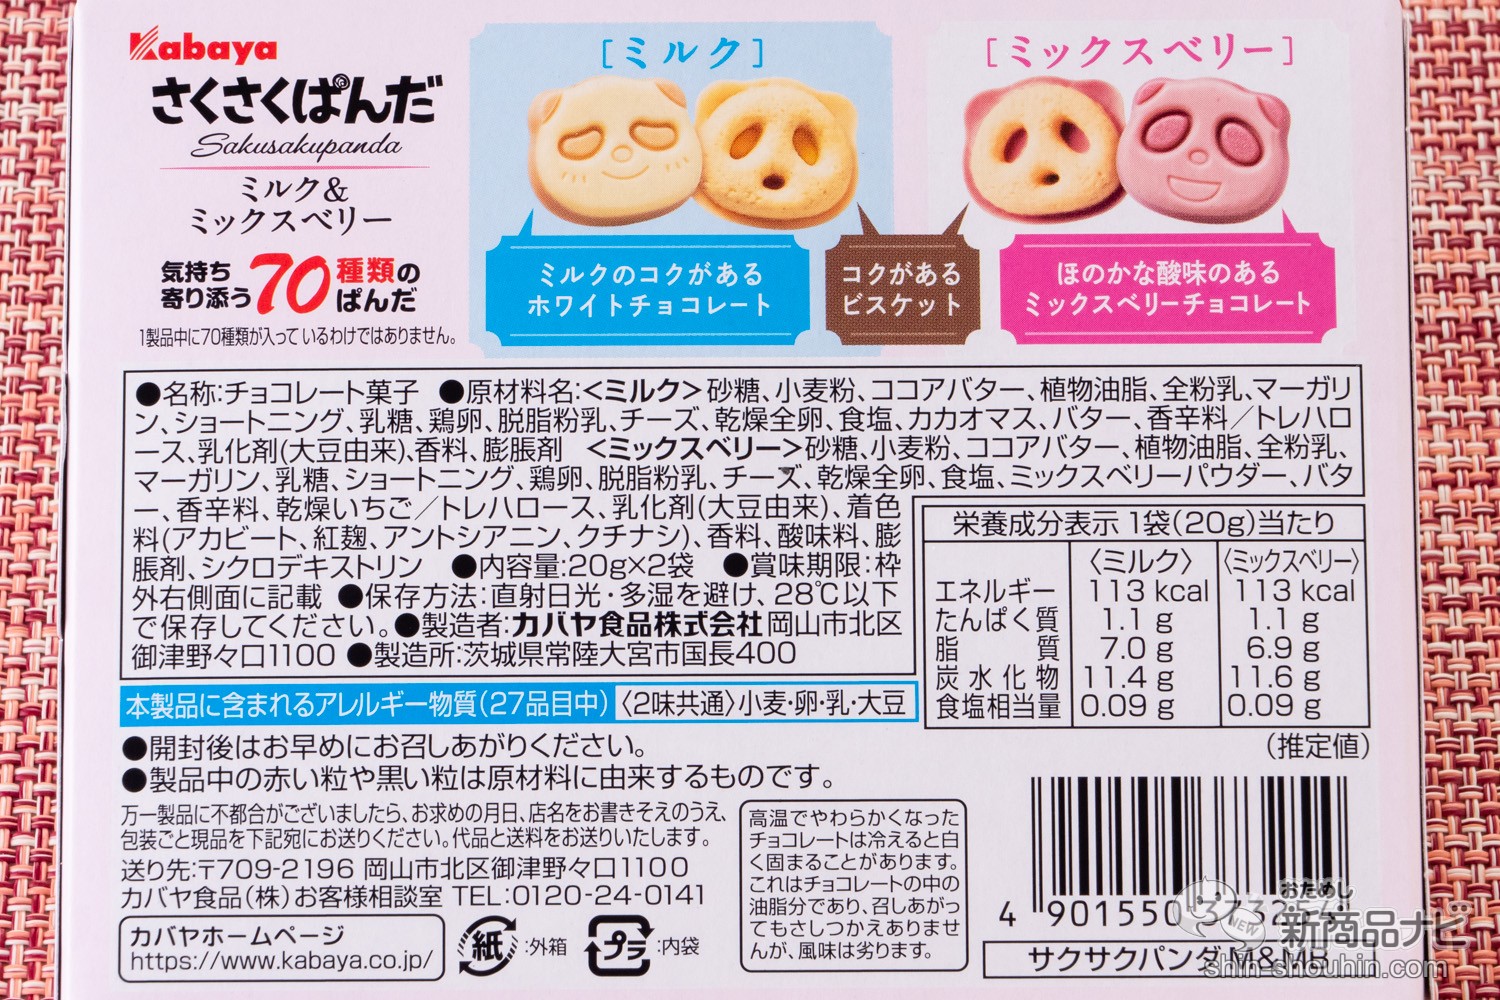 おためし新商品ナビ Blog Archive セブン イレブン限定 1箱に2色のパンダ入りのレアお菓子 さくさくぱんだ ミルク ミックスベリー